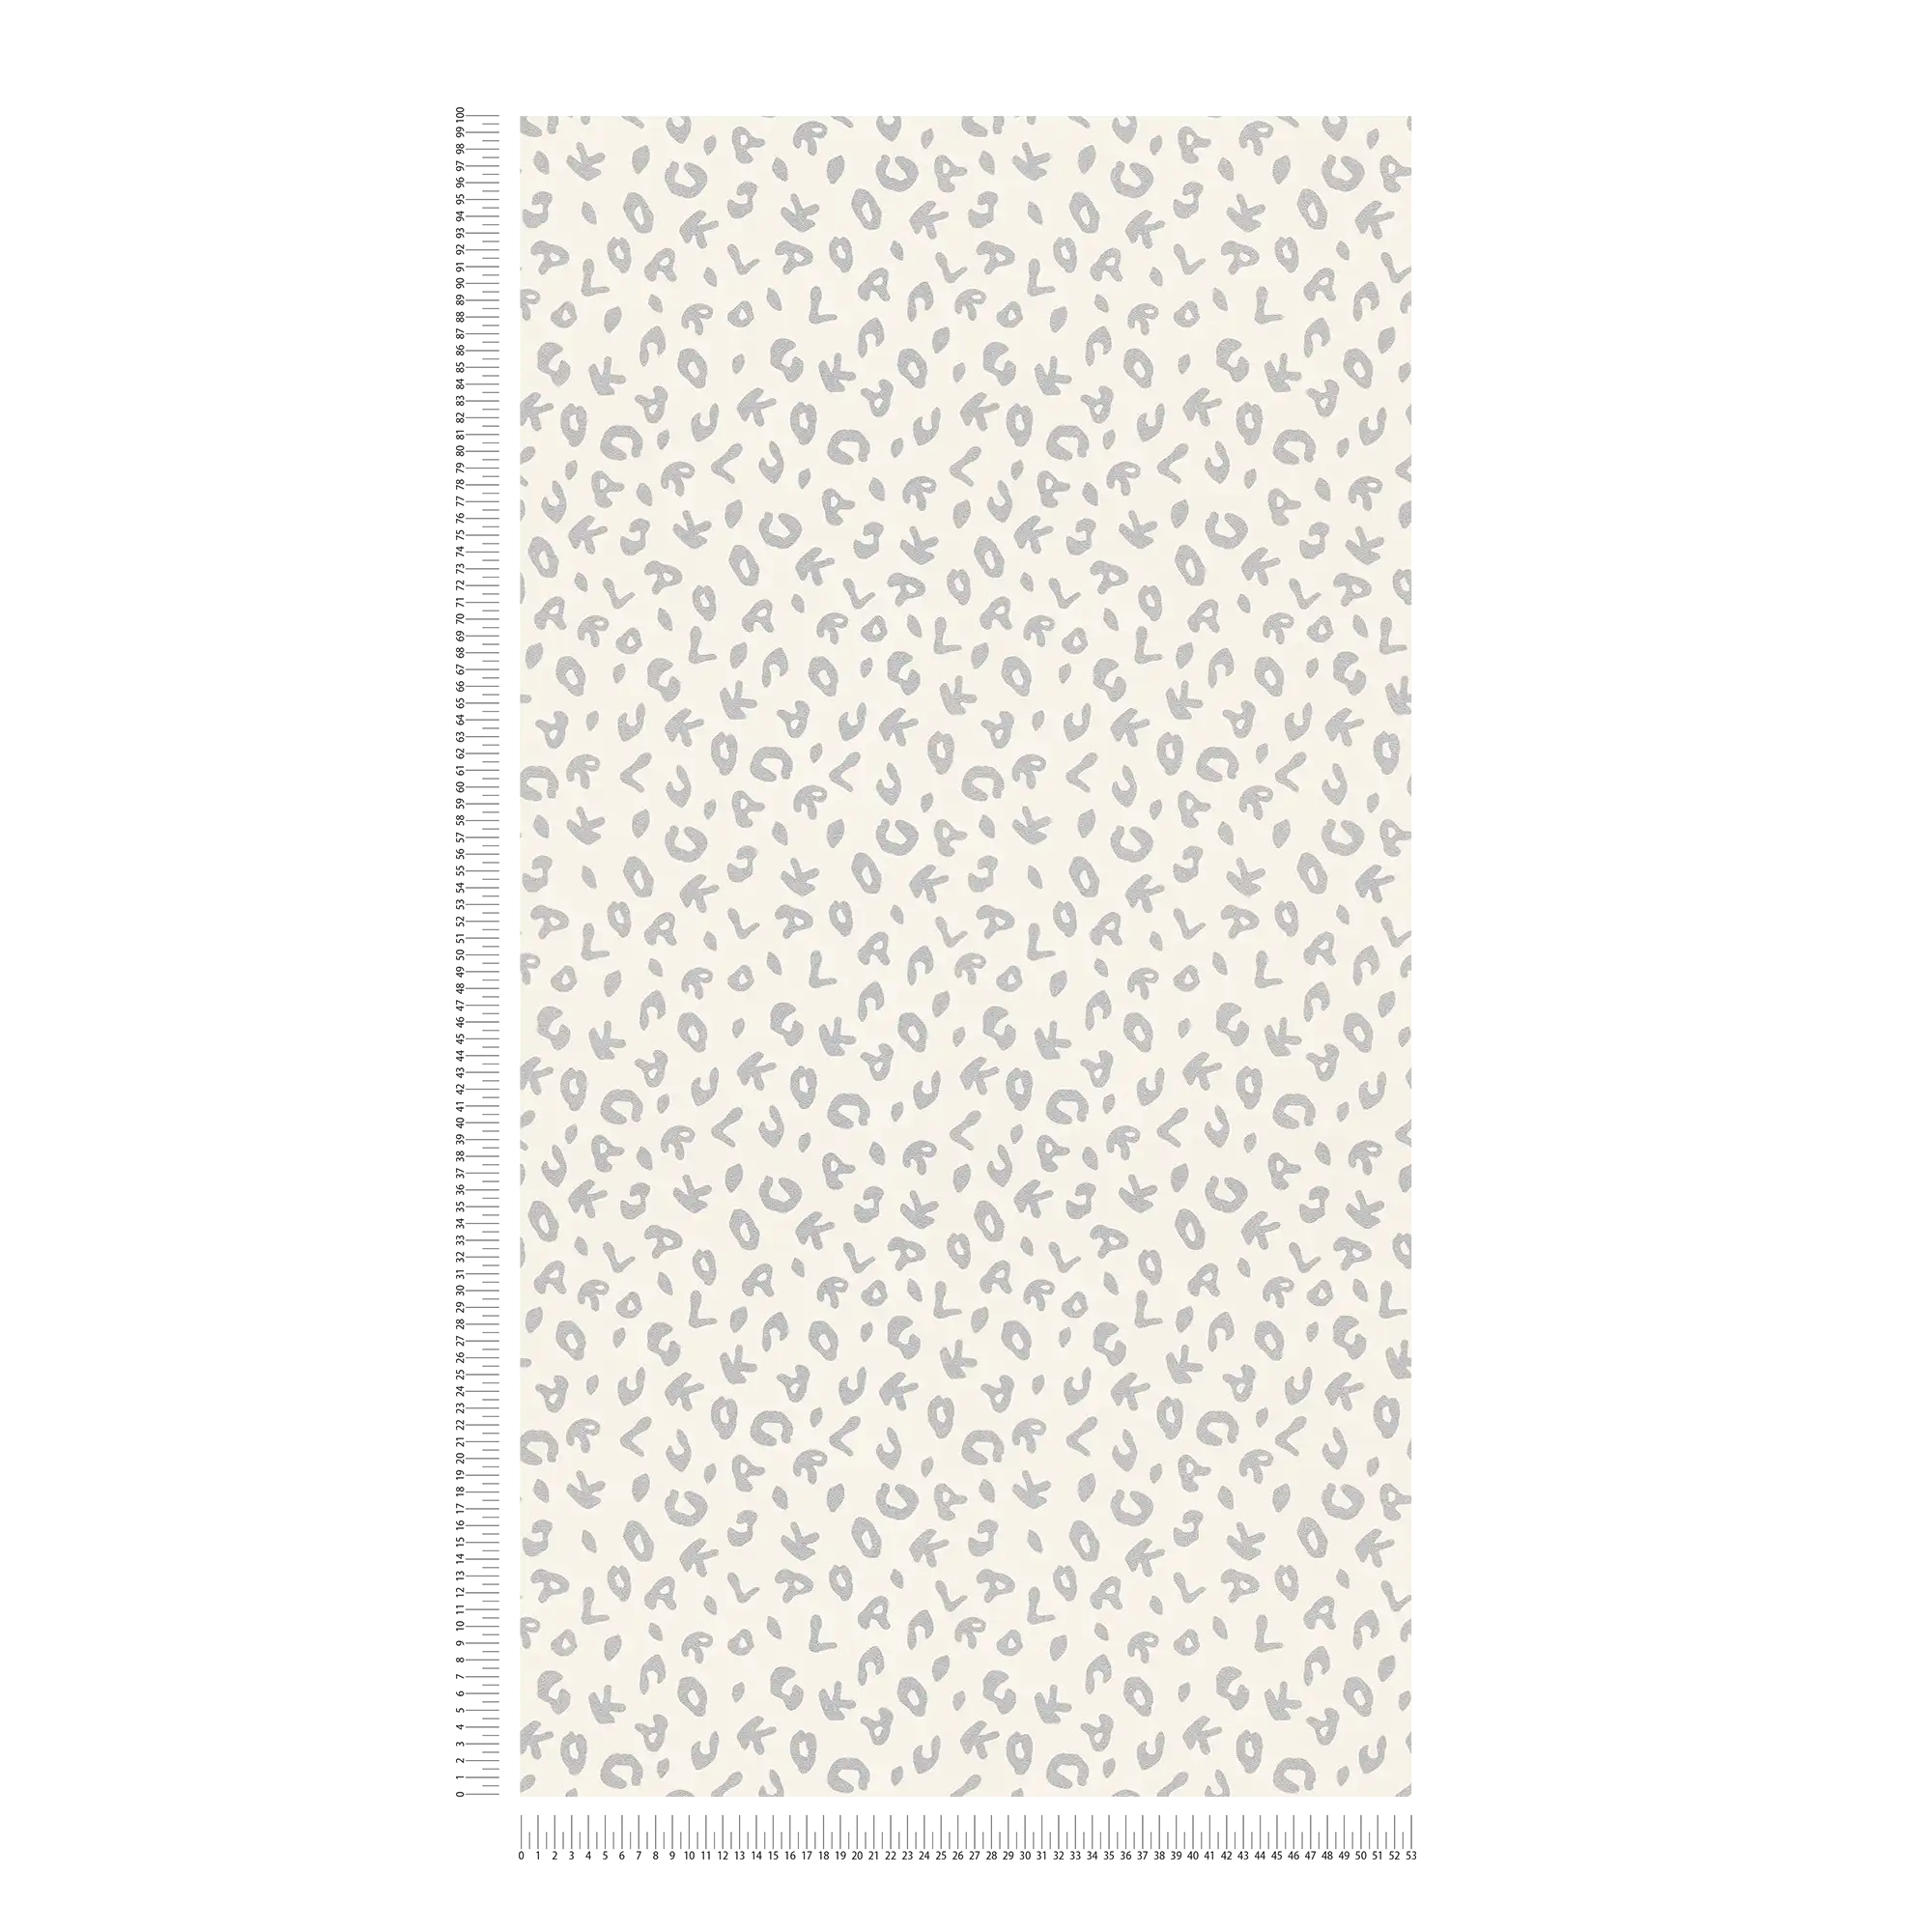             Karl LAGERFELD papier peint or style imprimé léopard - métallique, blanc
        